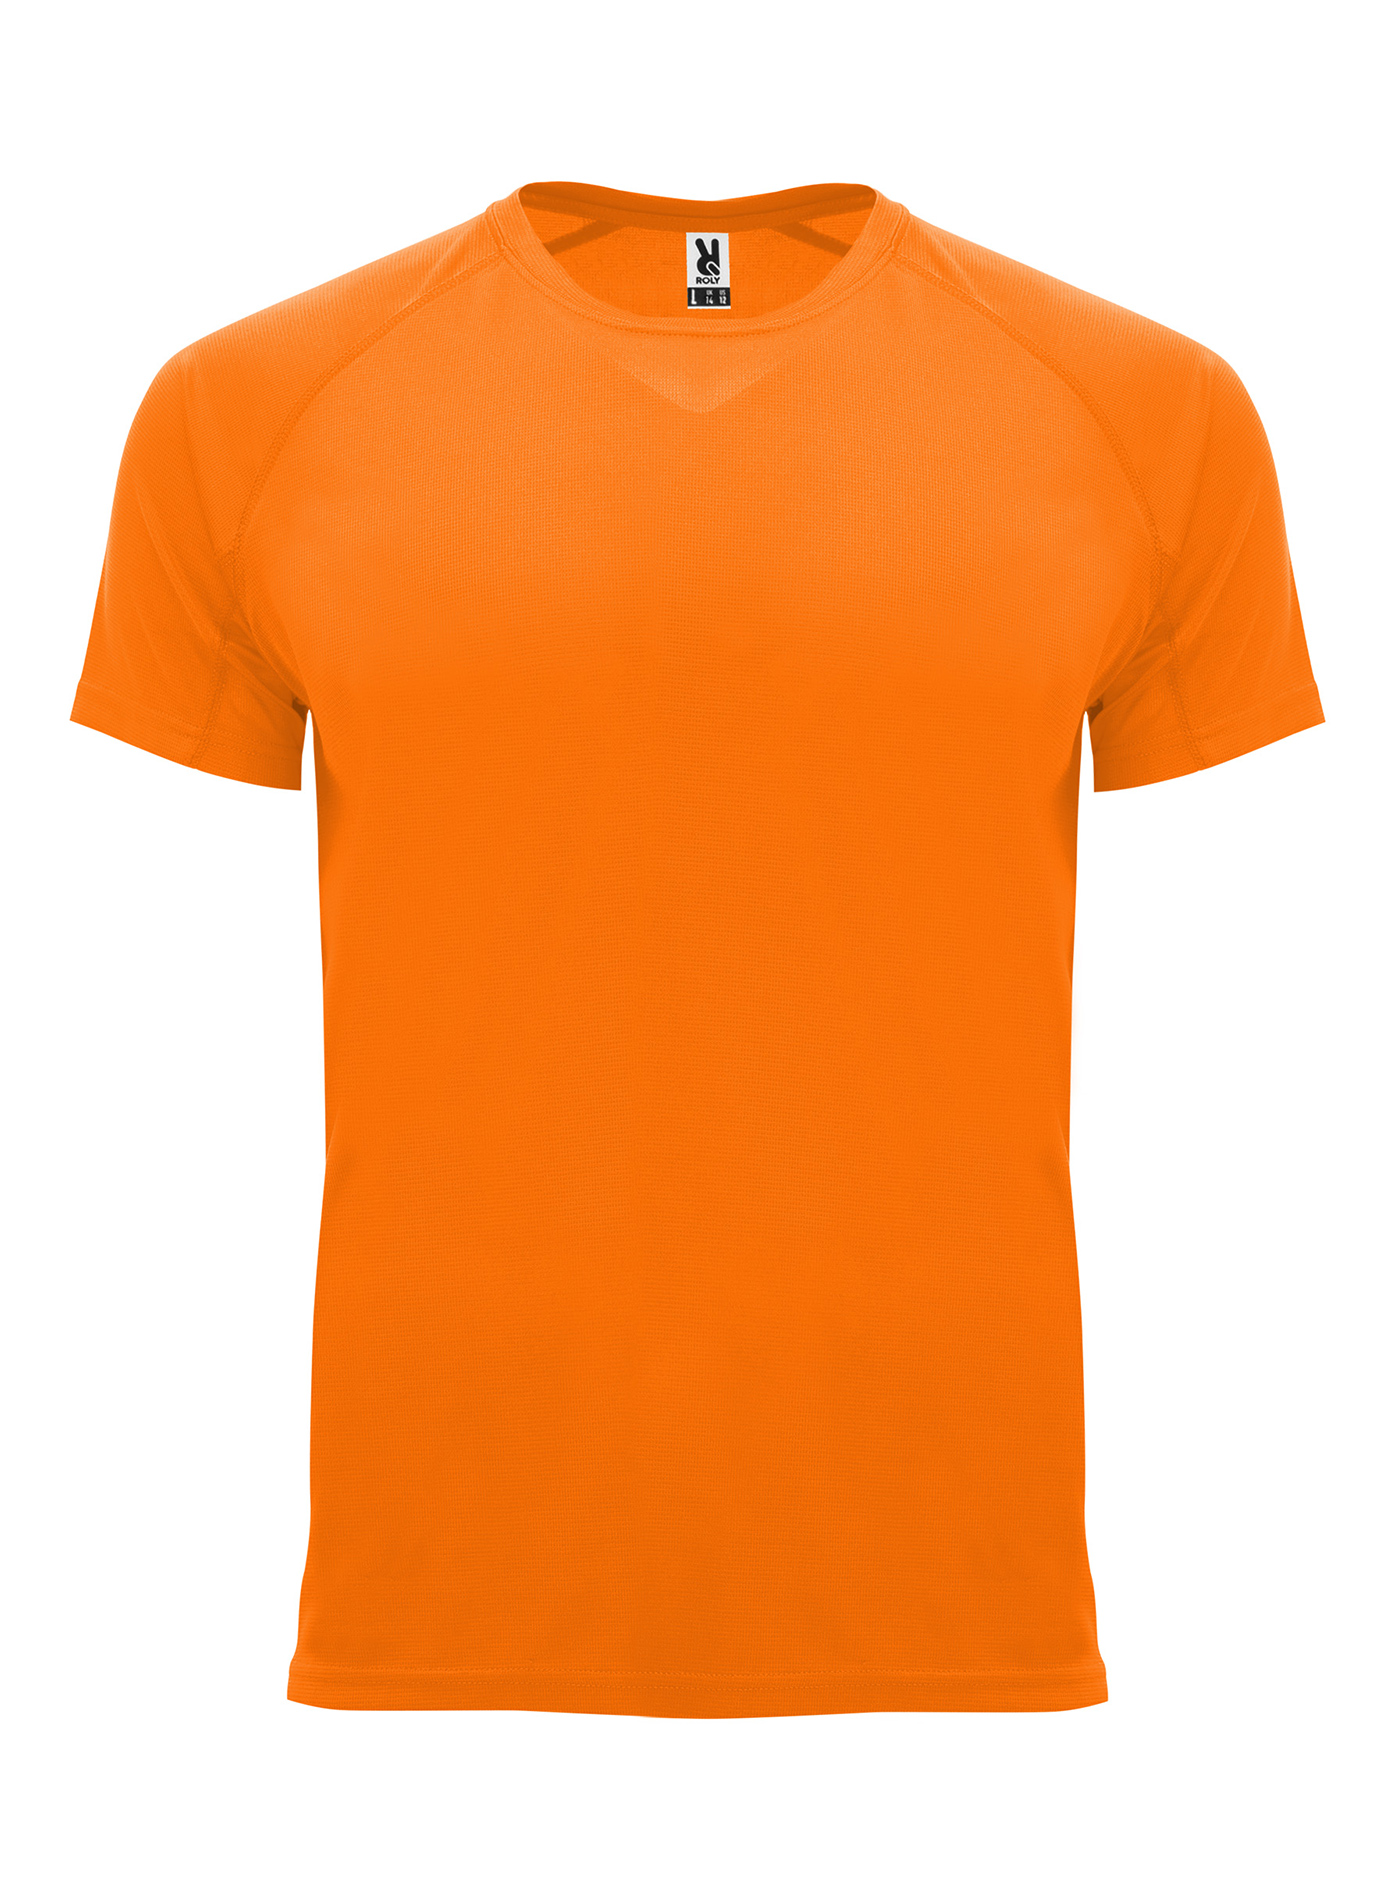 Pánské sportovní tričko Roly Bahrain - Neonová oranžová XL